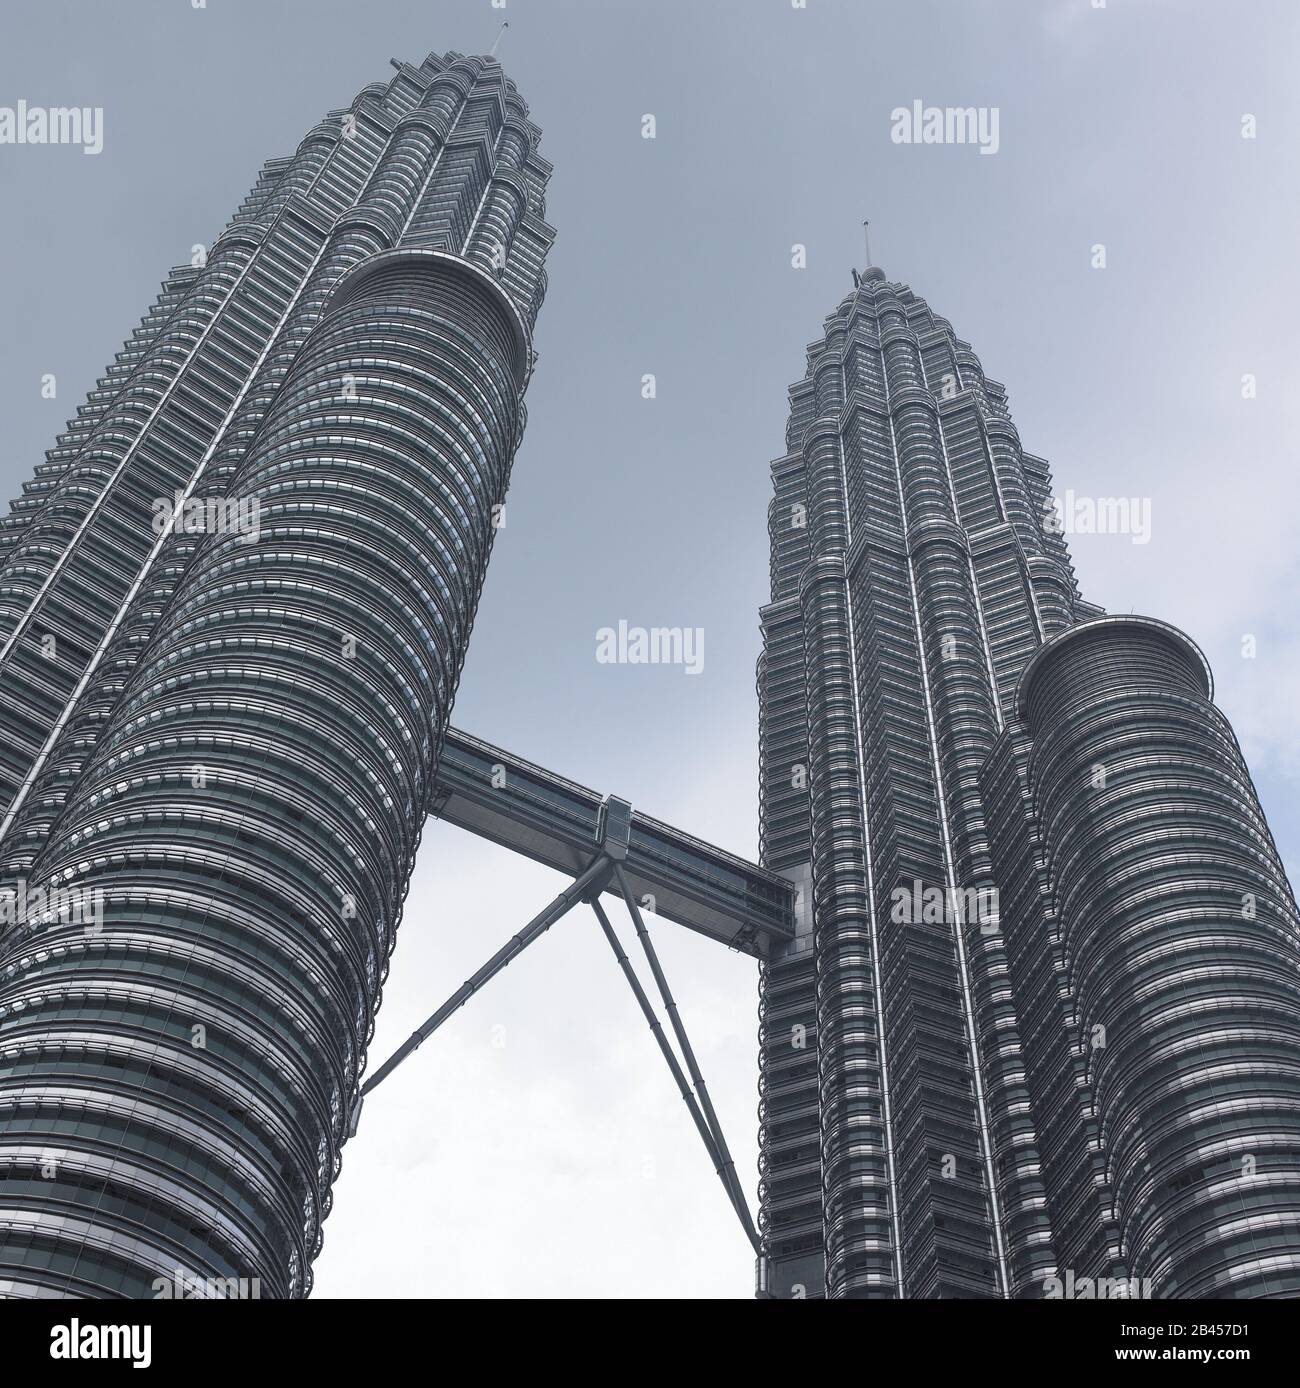 Petronas twin towers in kuala lumpur at malaysia Stock Photo